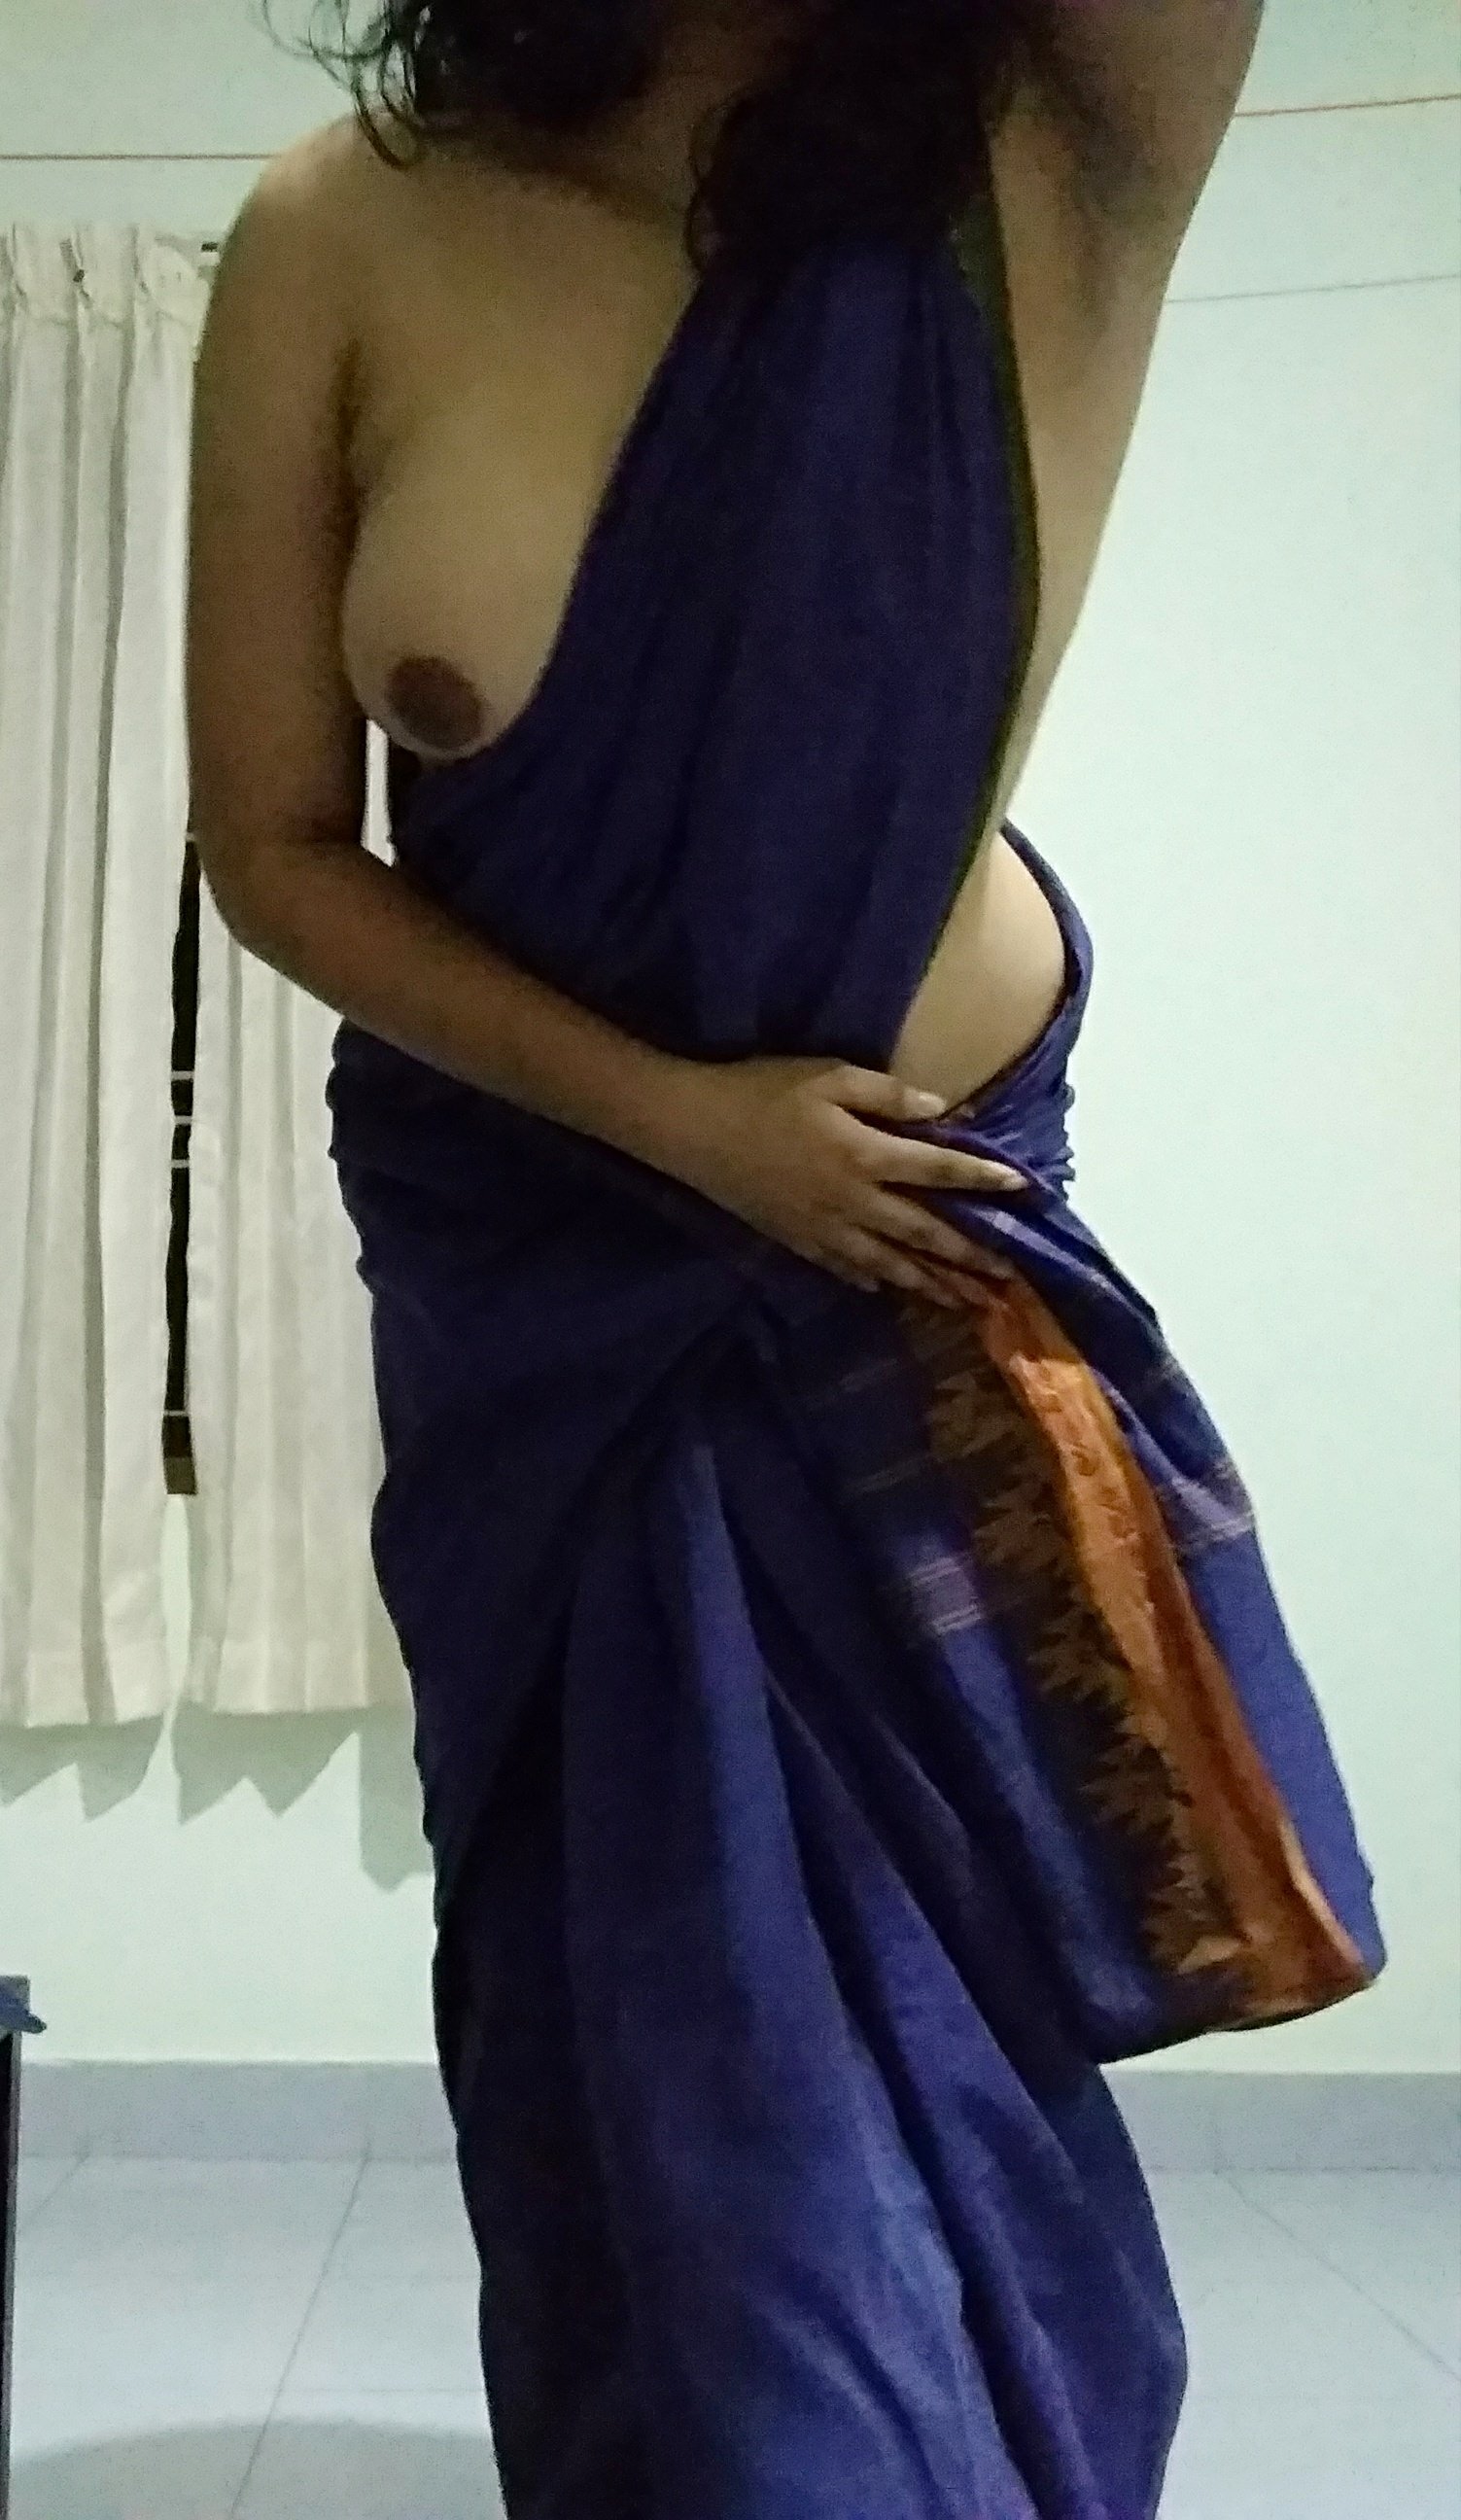 Wearing saree